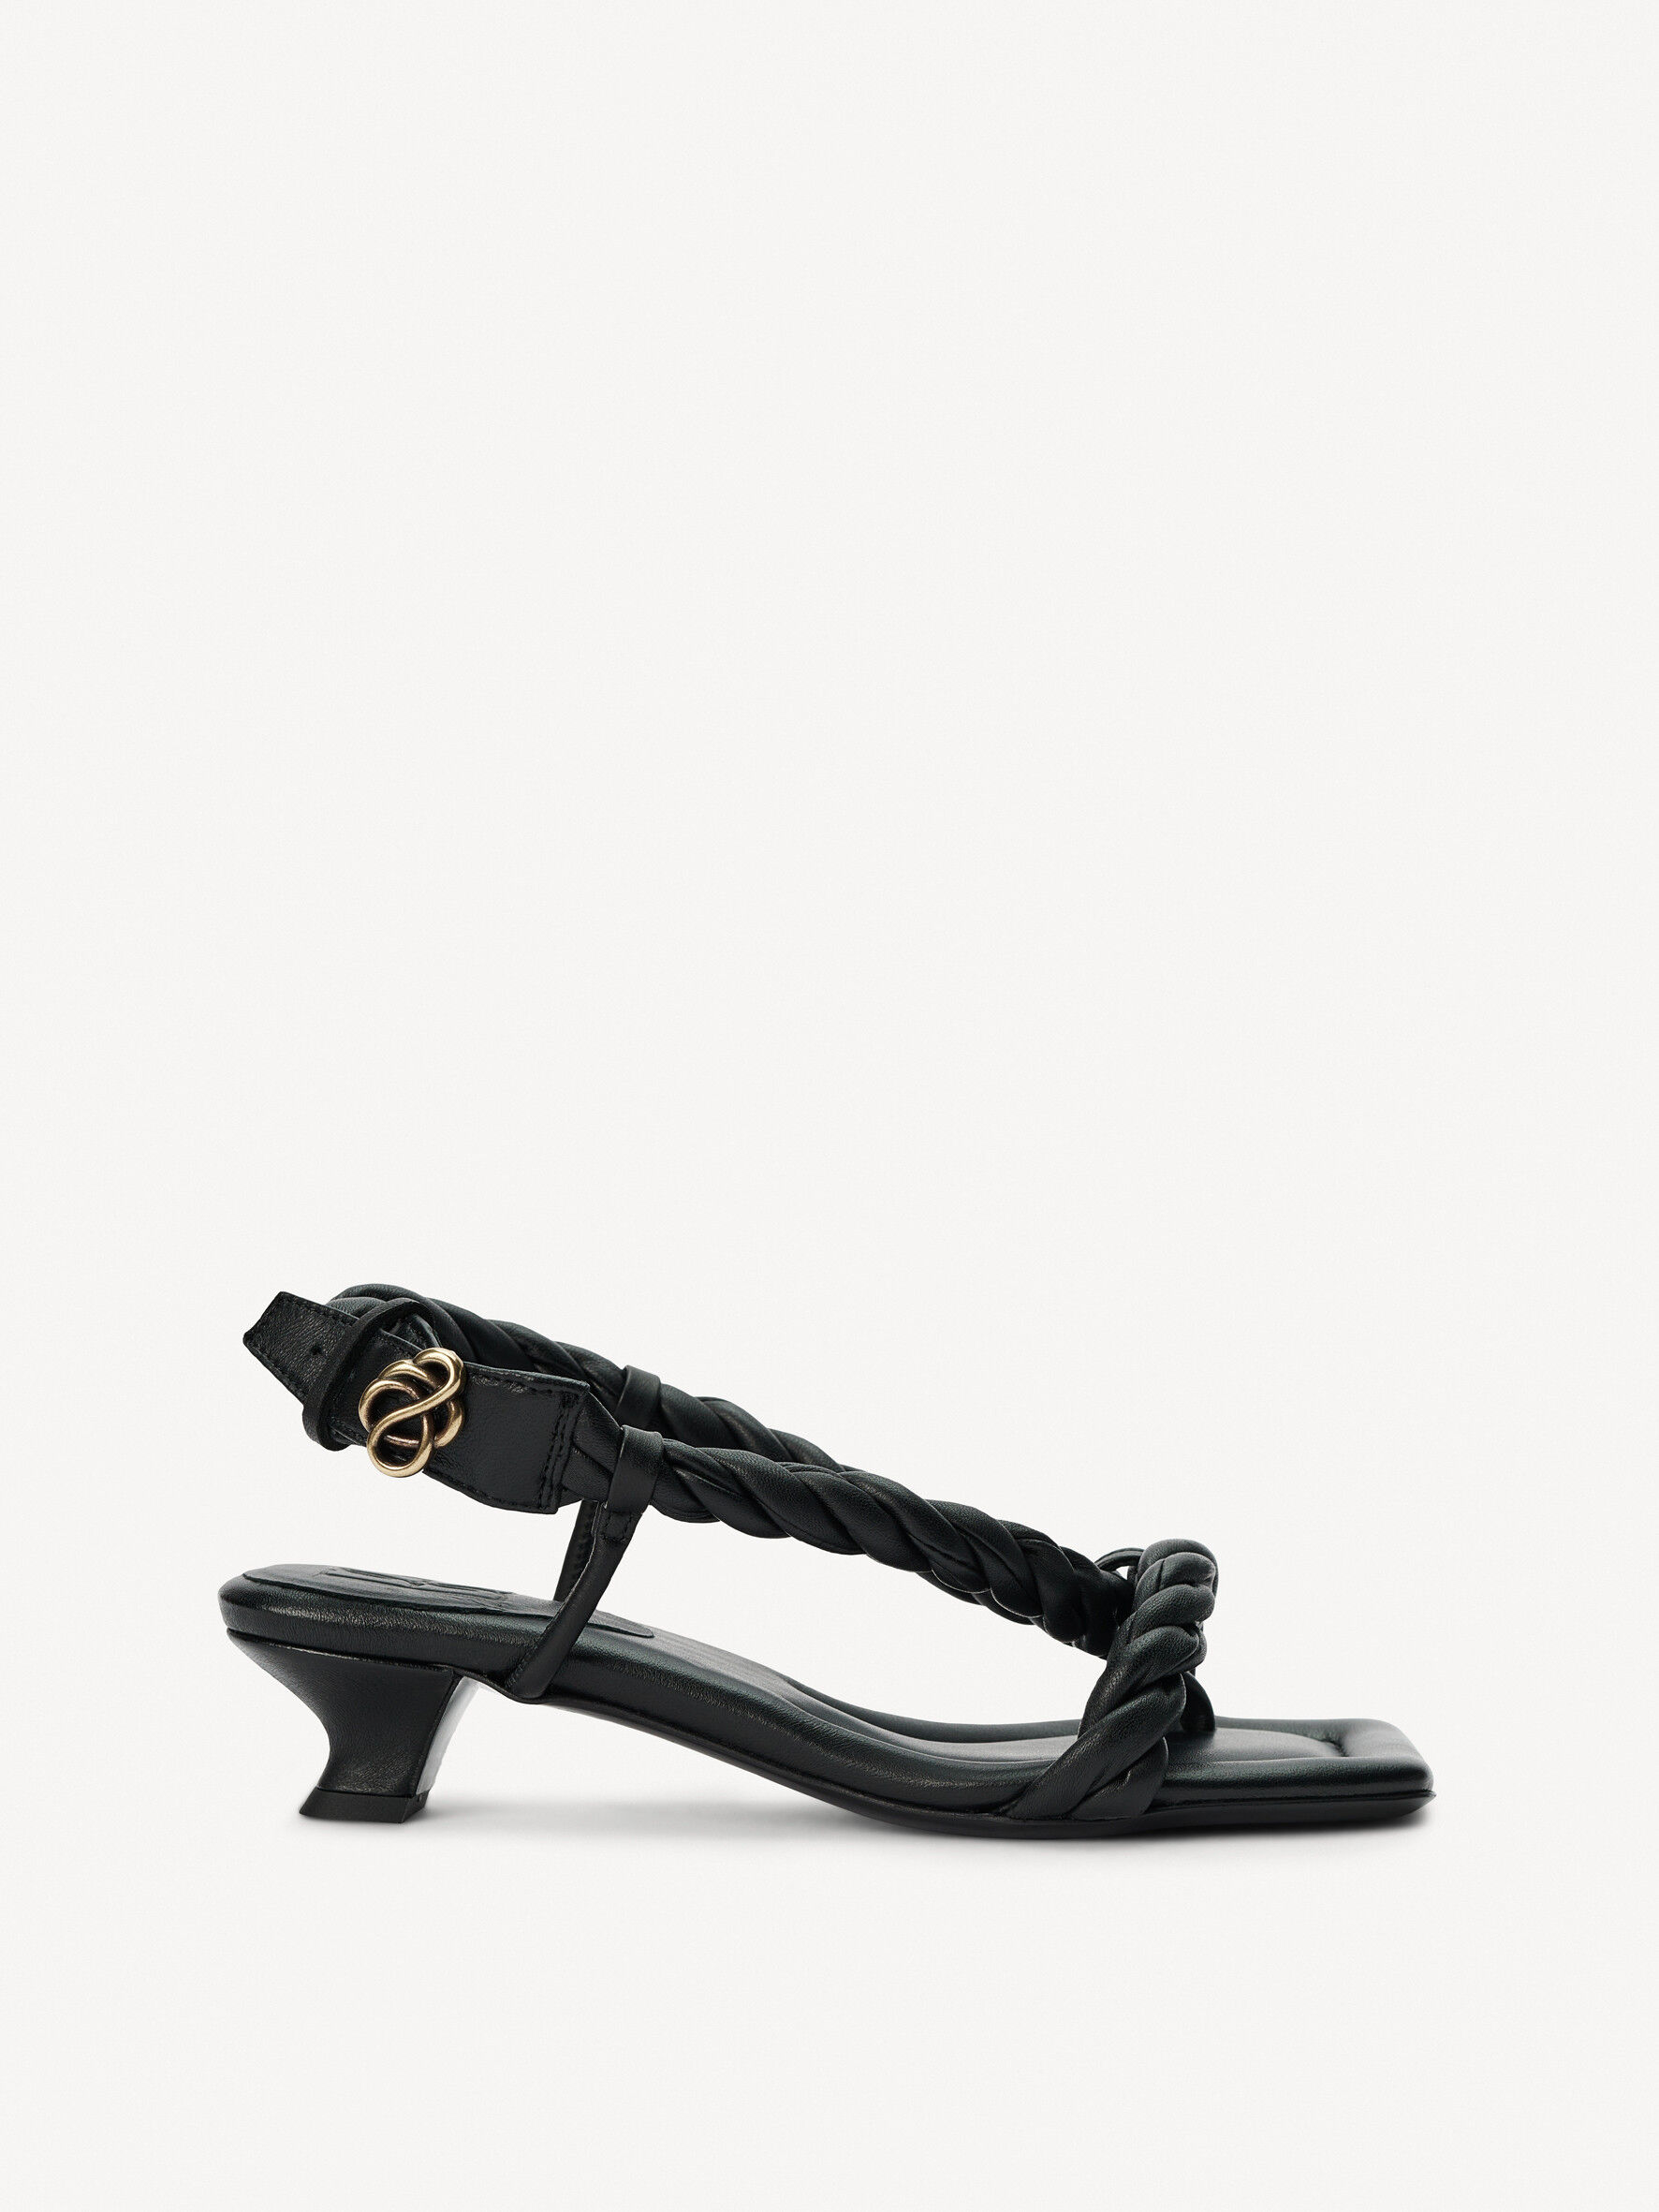 Buy MR Cobbler Black Slip on Sandals For Men Online - Get 55% Off